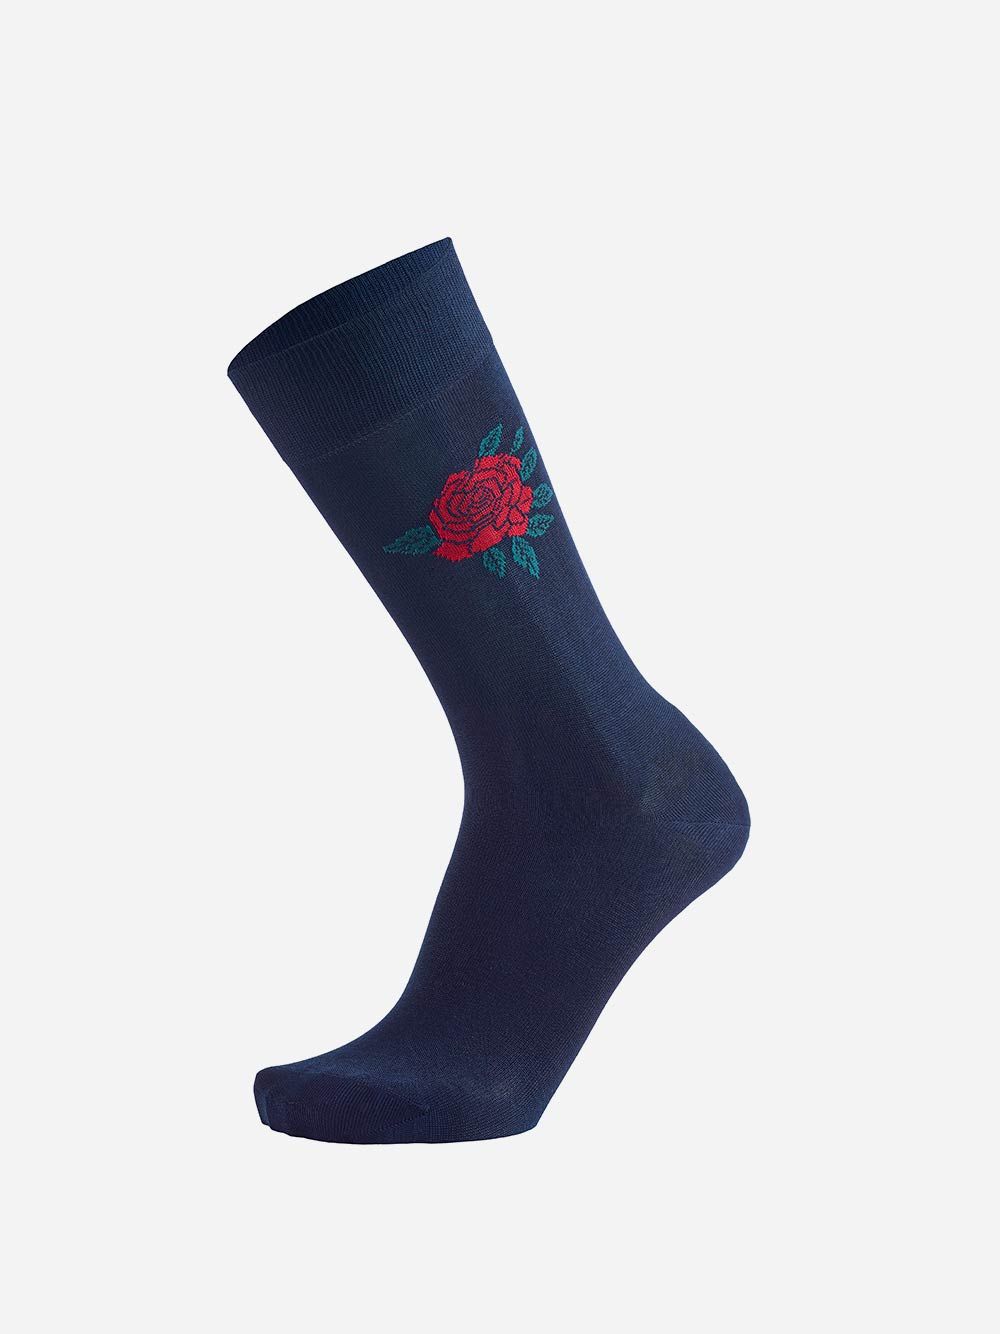 Rose Blue Navy Socks | Westmister